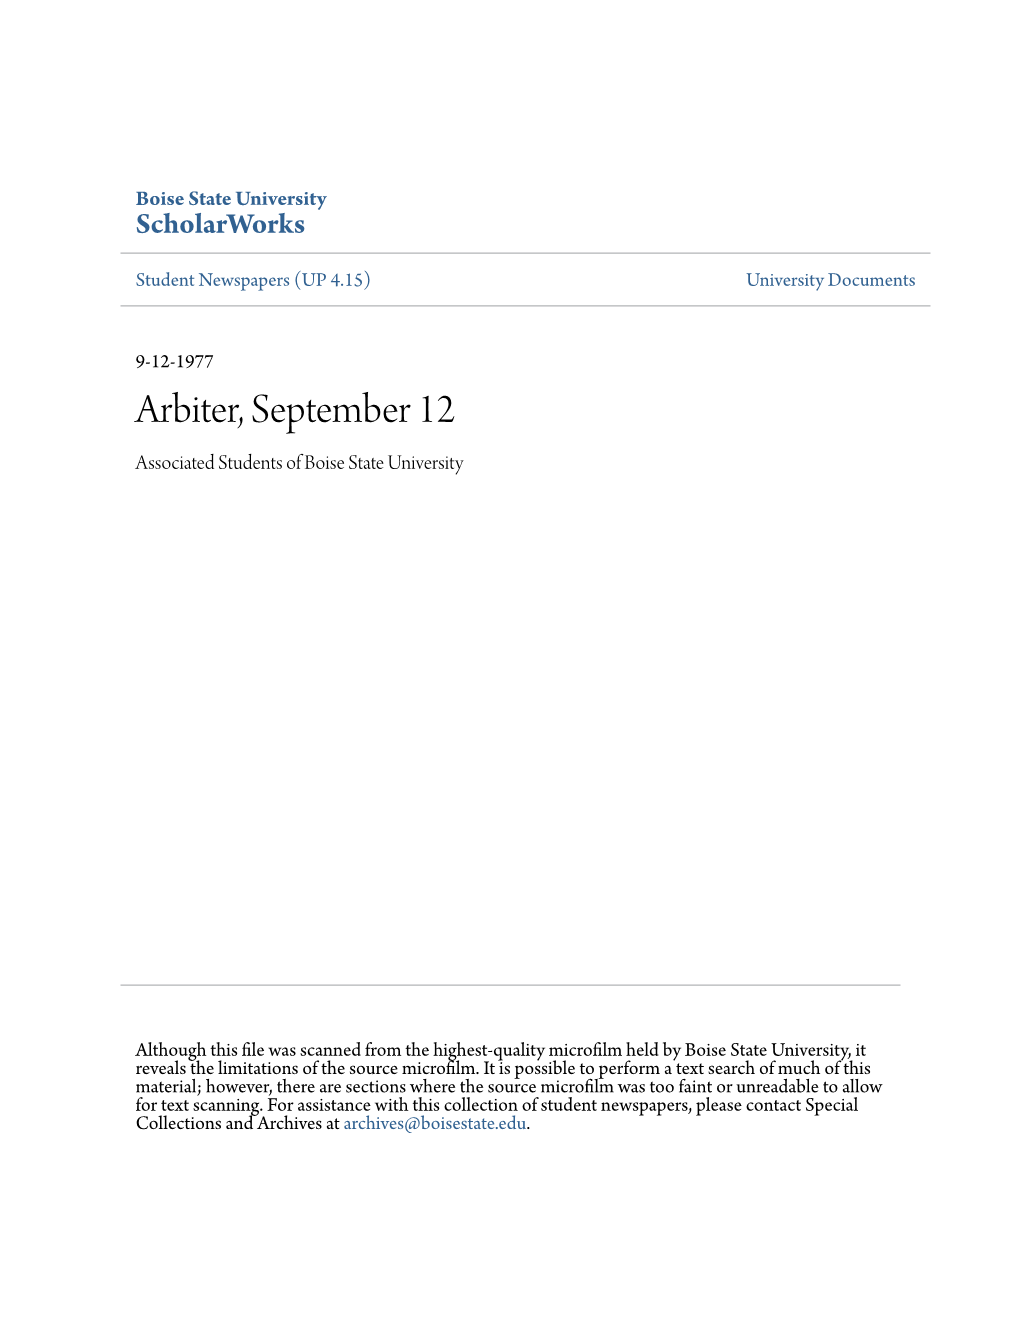 Arbiter, September 12 Associated Students of Boise State University